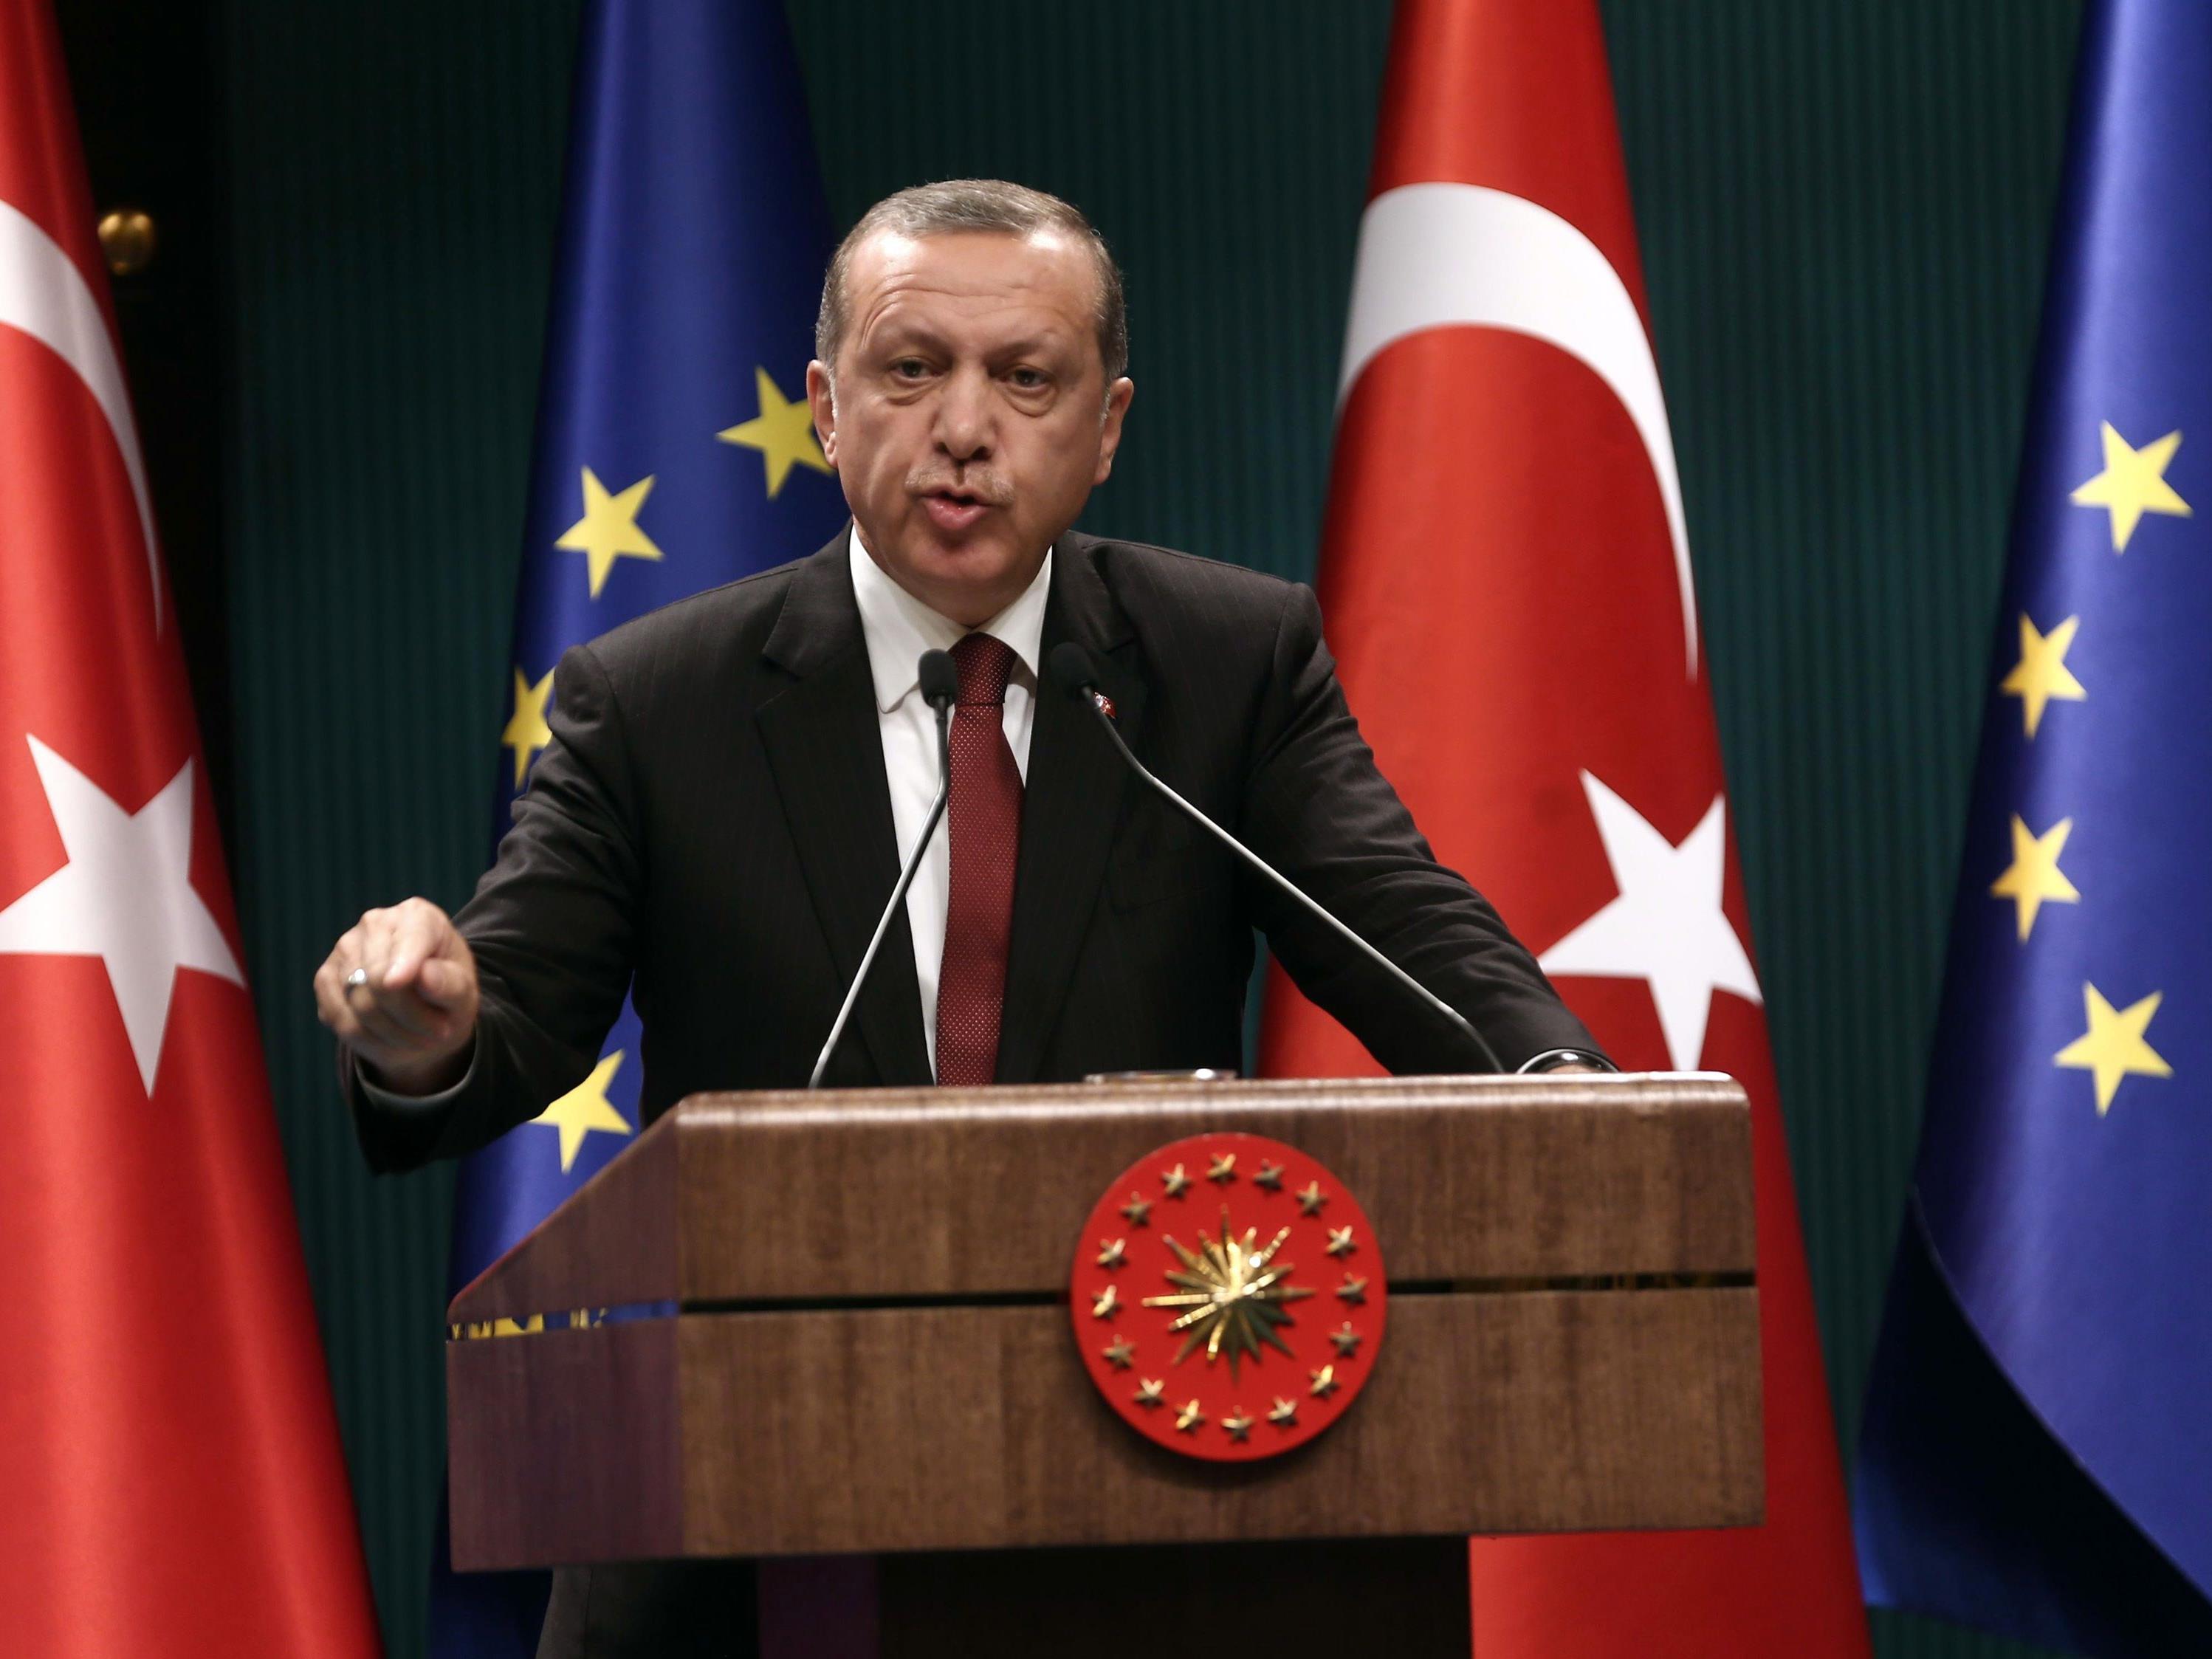 Für Erdogan ist die EU-Mitgliedschaft immer noch ein Ziel.